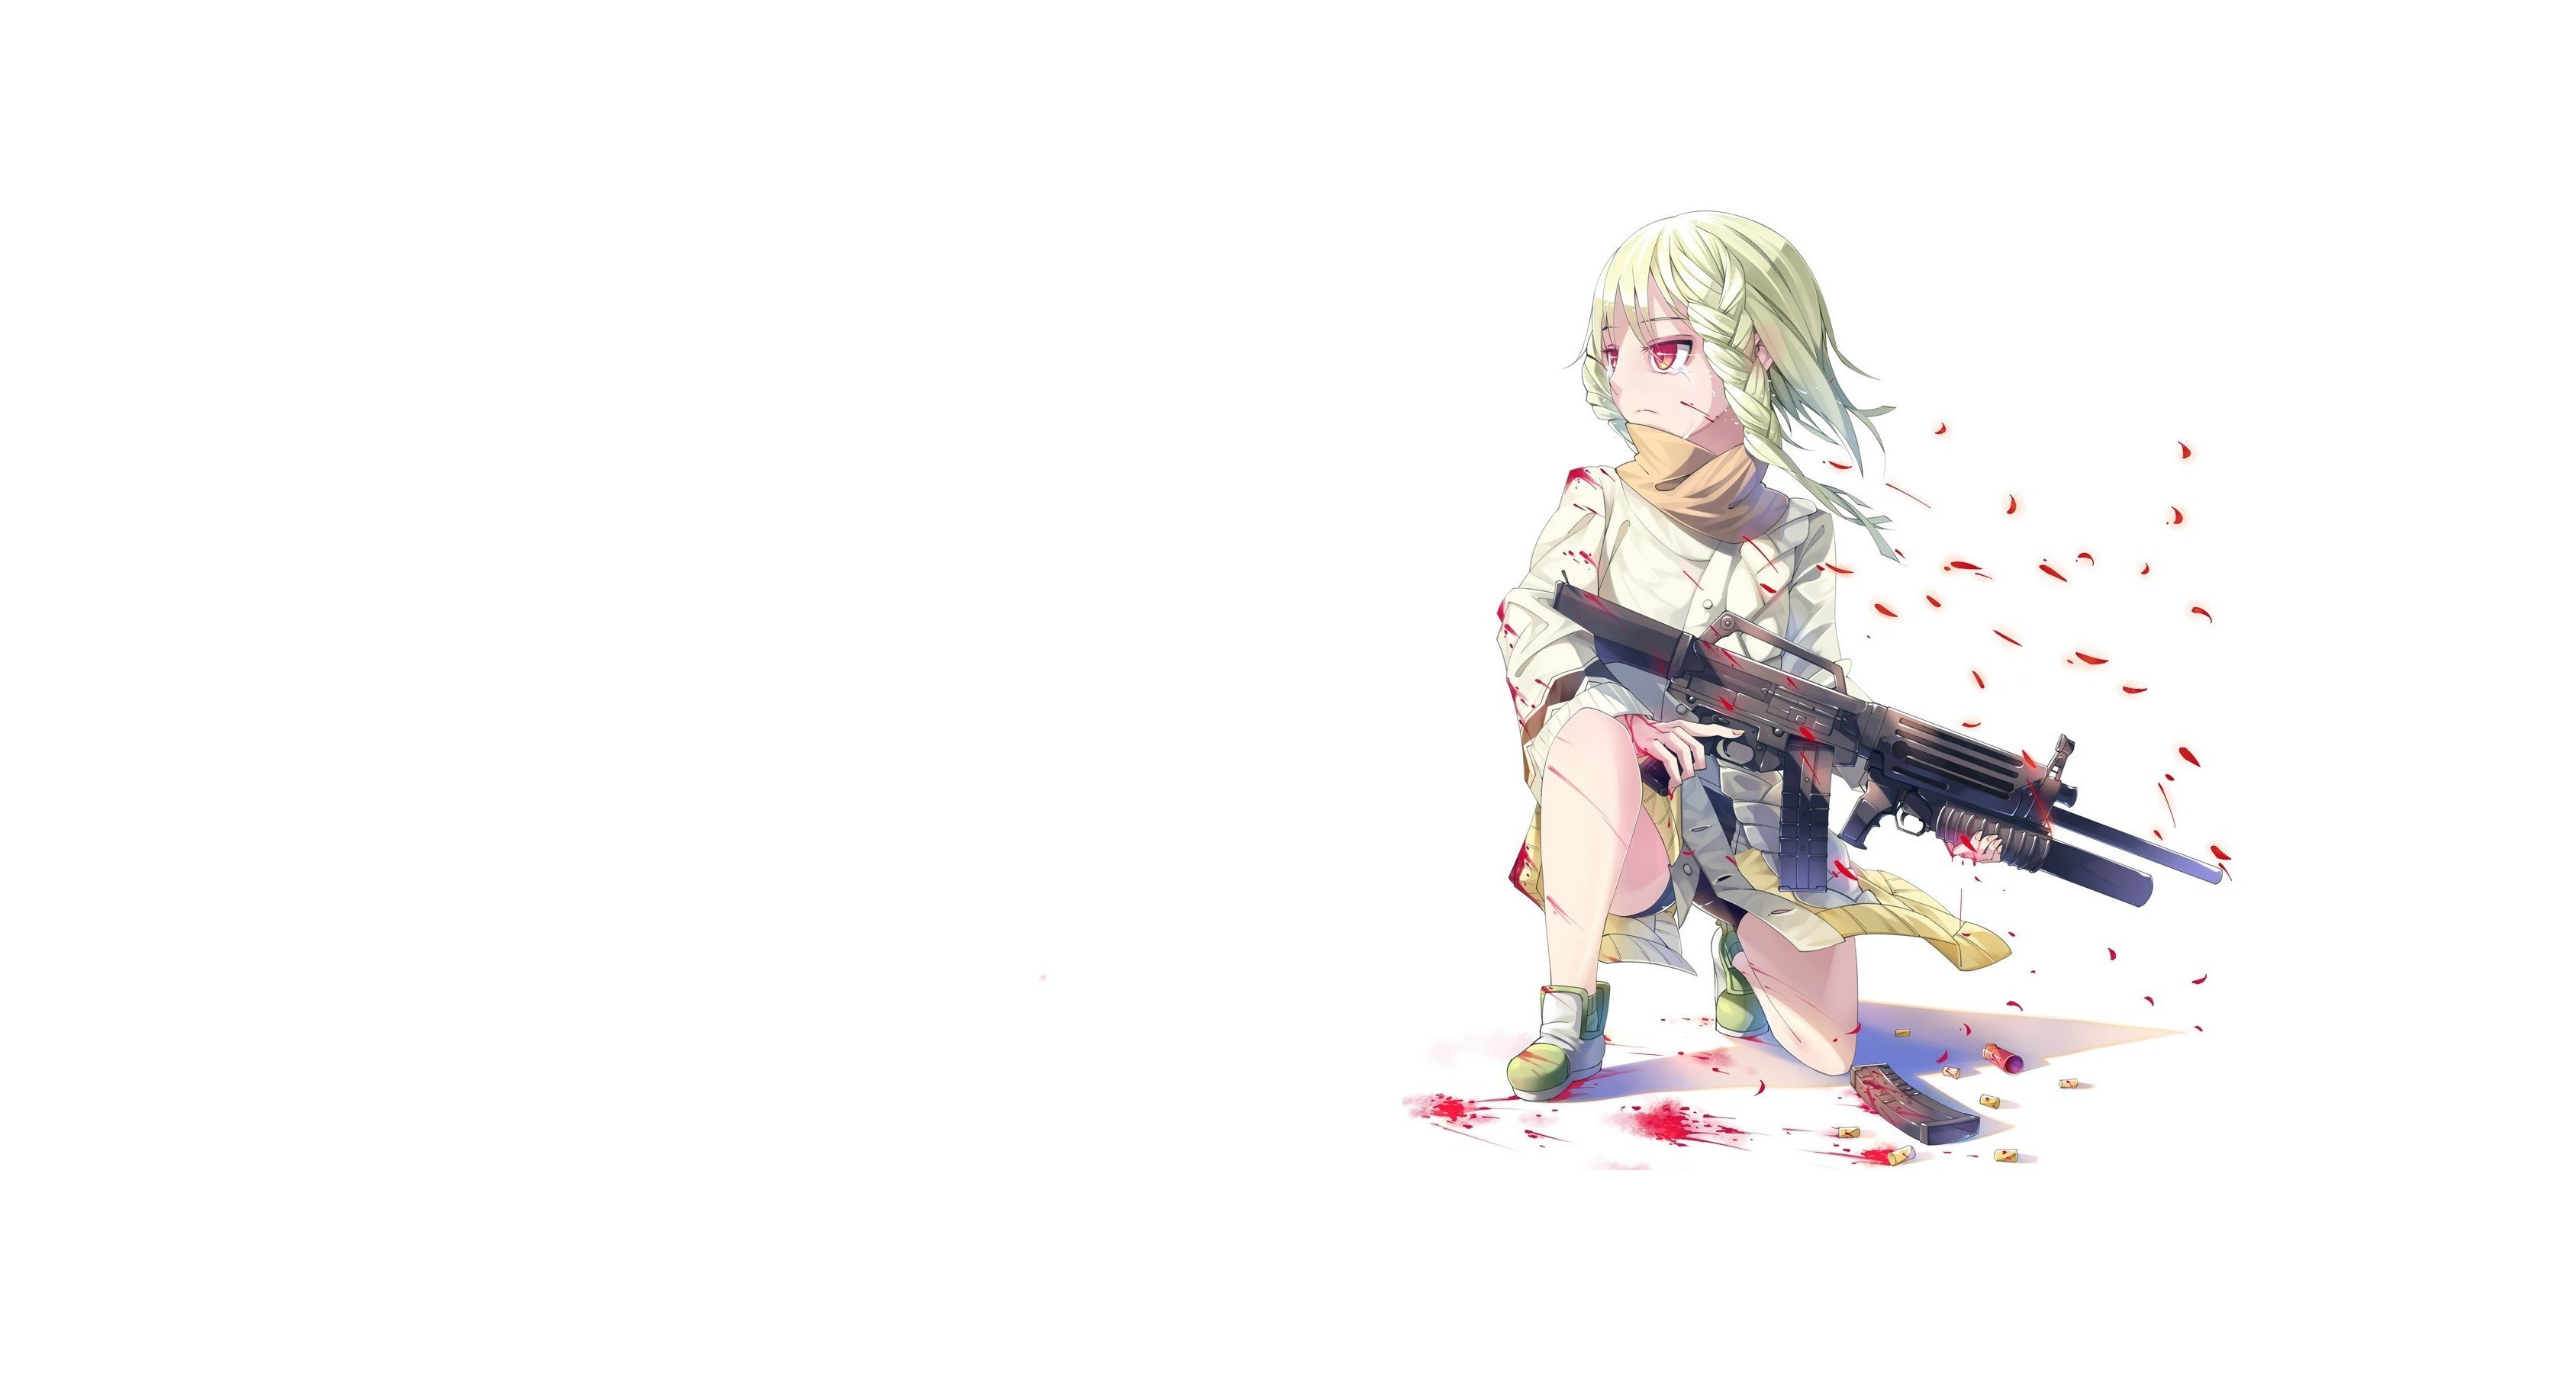 Anime Gun Wallpaper - Anime Girls With Guns Wallpaper Hd , HD Wallpaper & Backgrounds